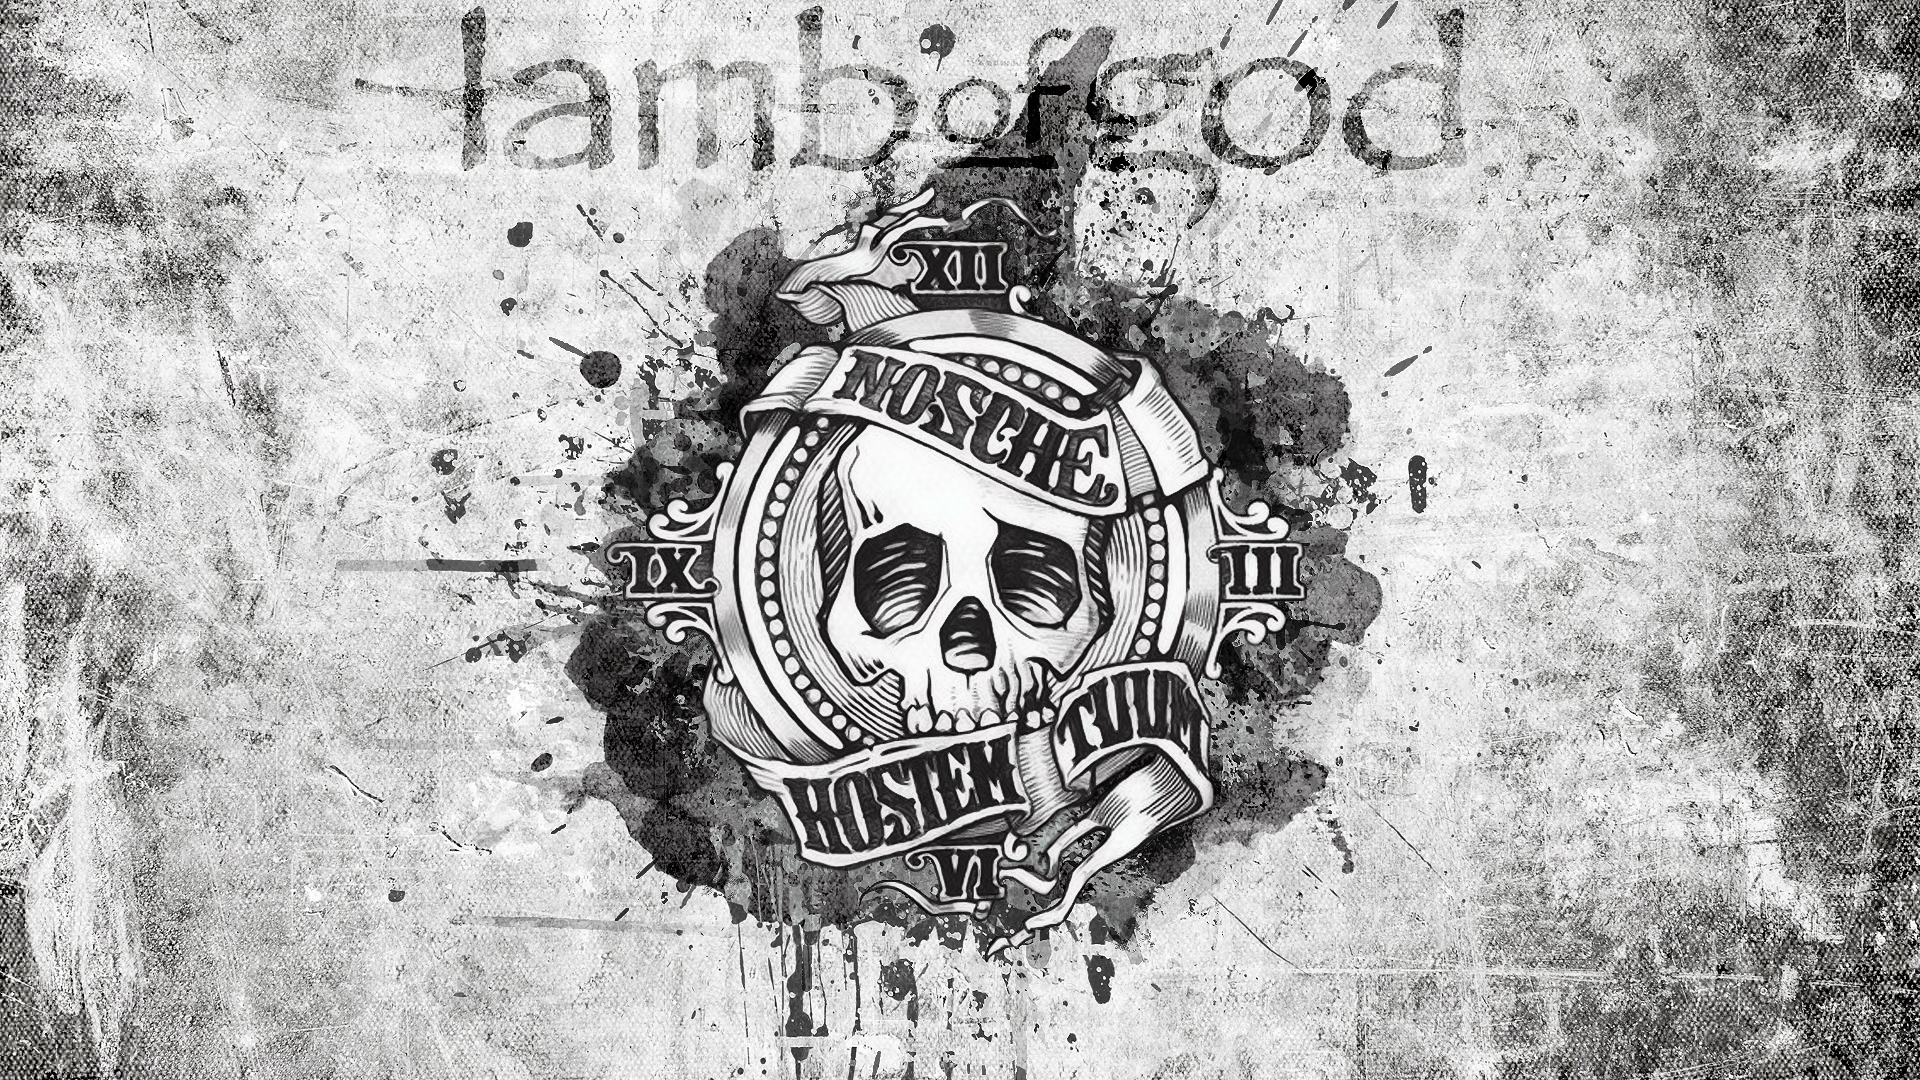 lamb of god logo wallpaper